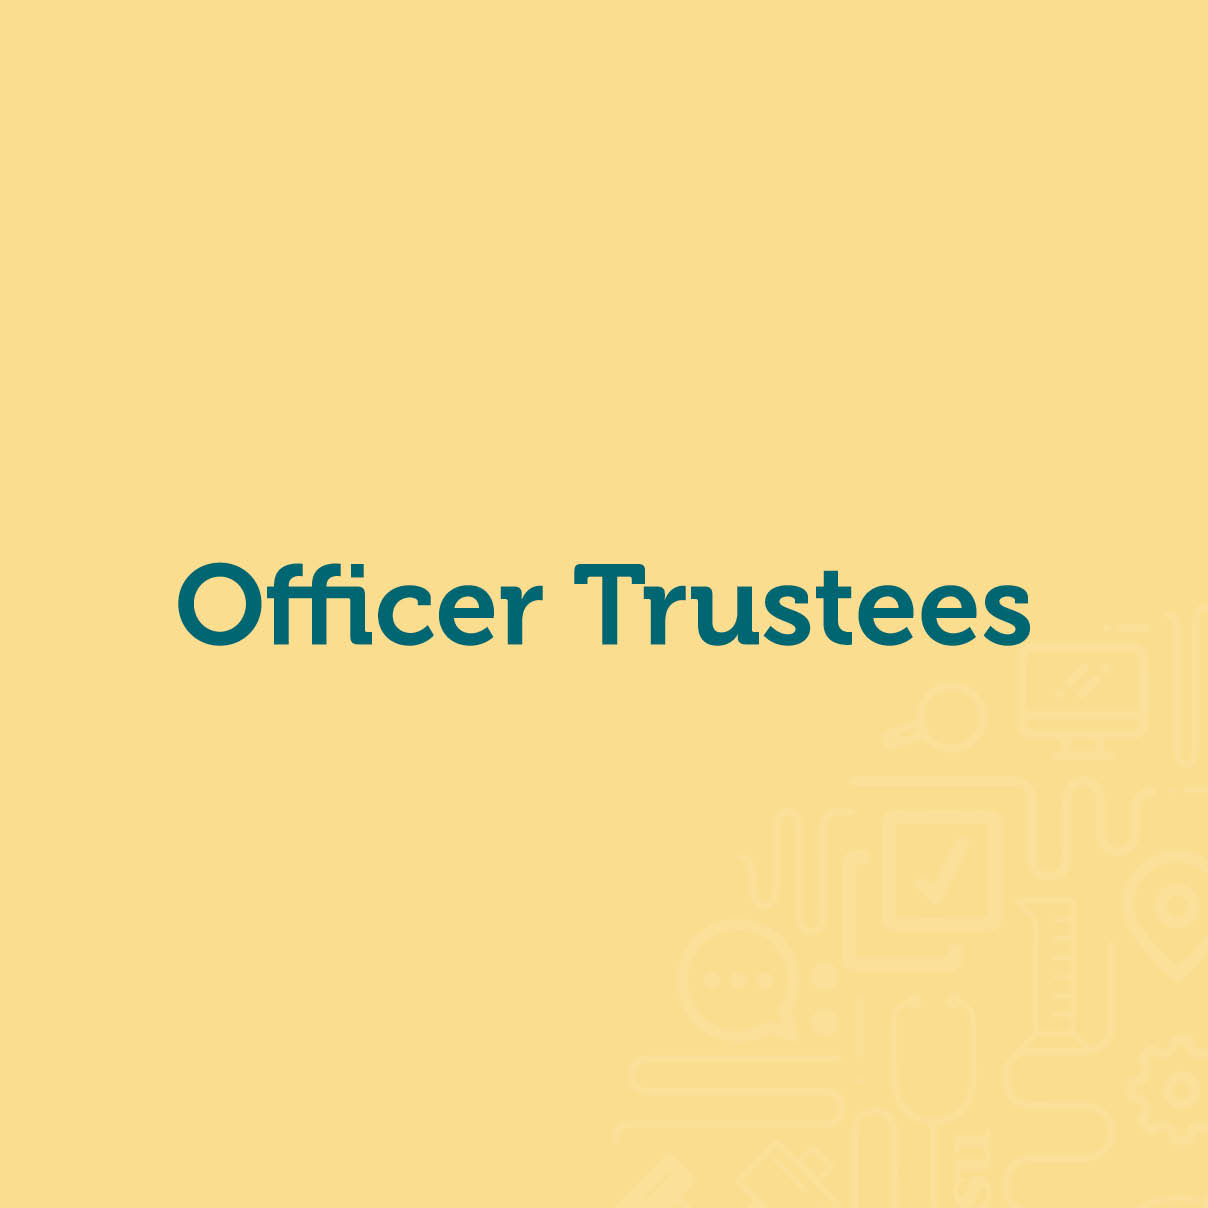 Officer Trustees